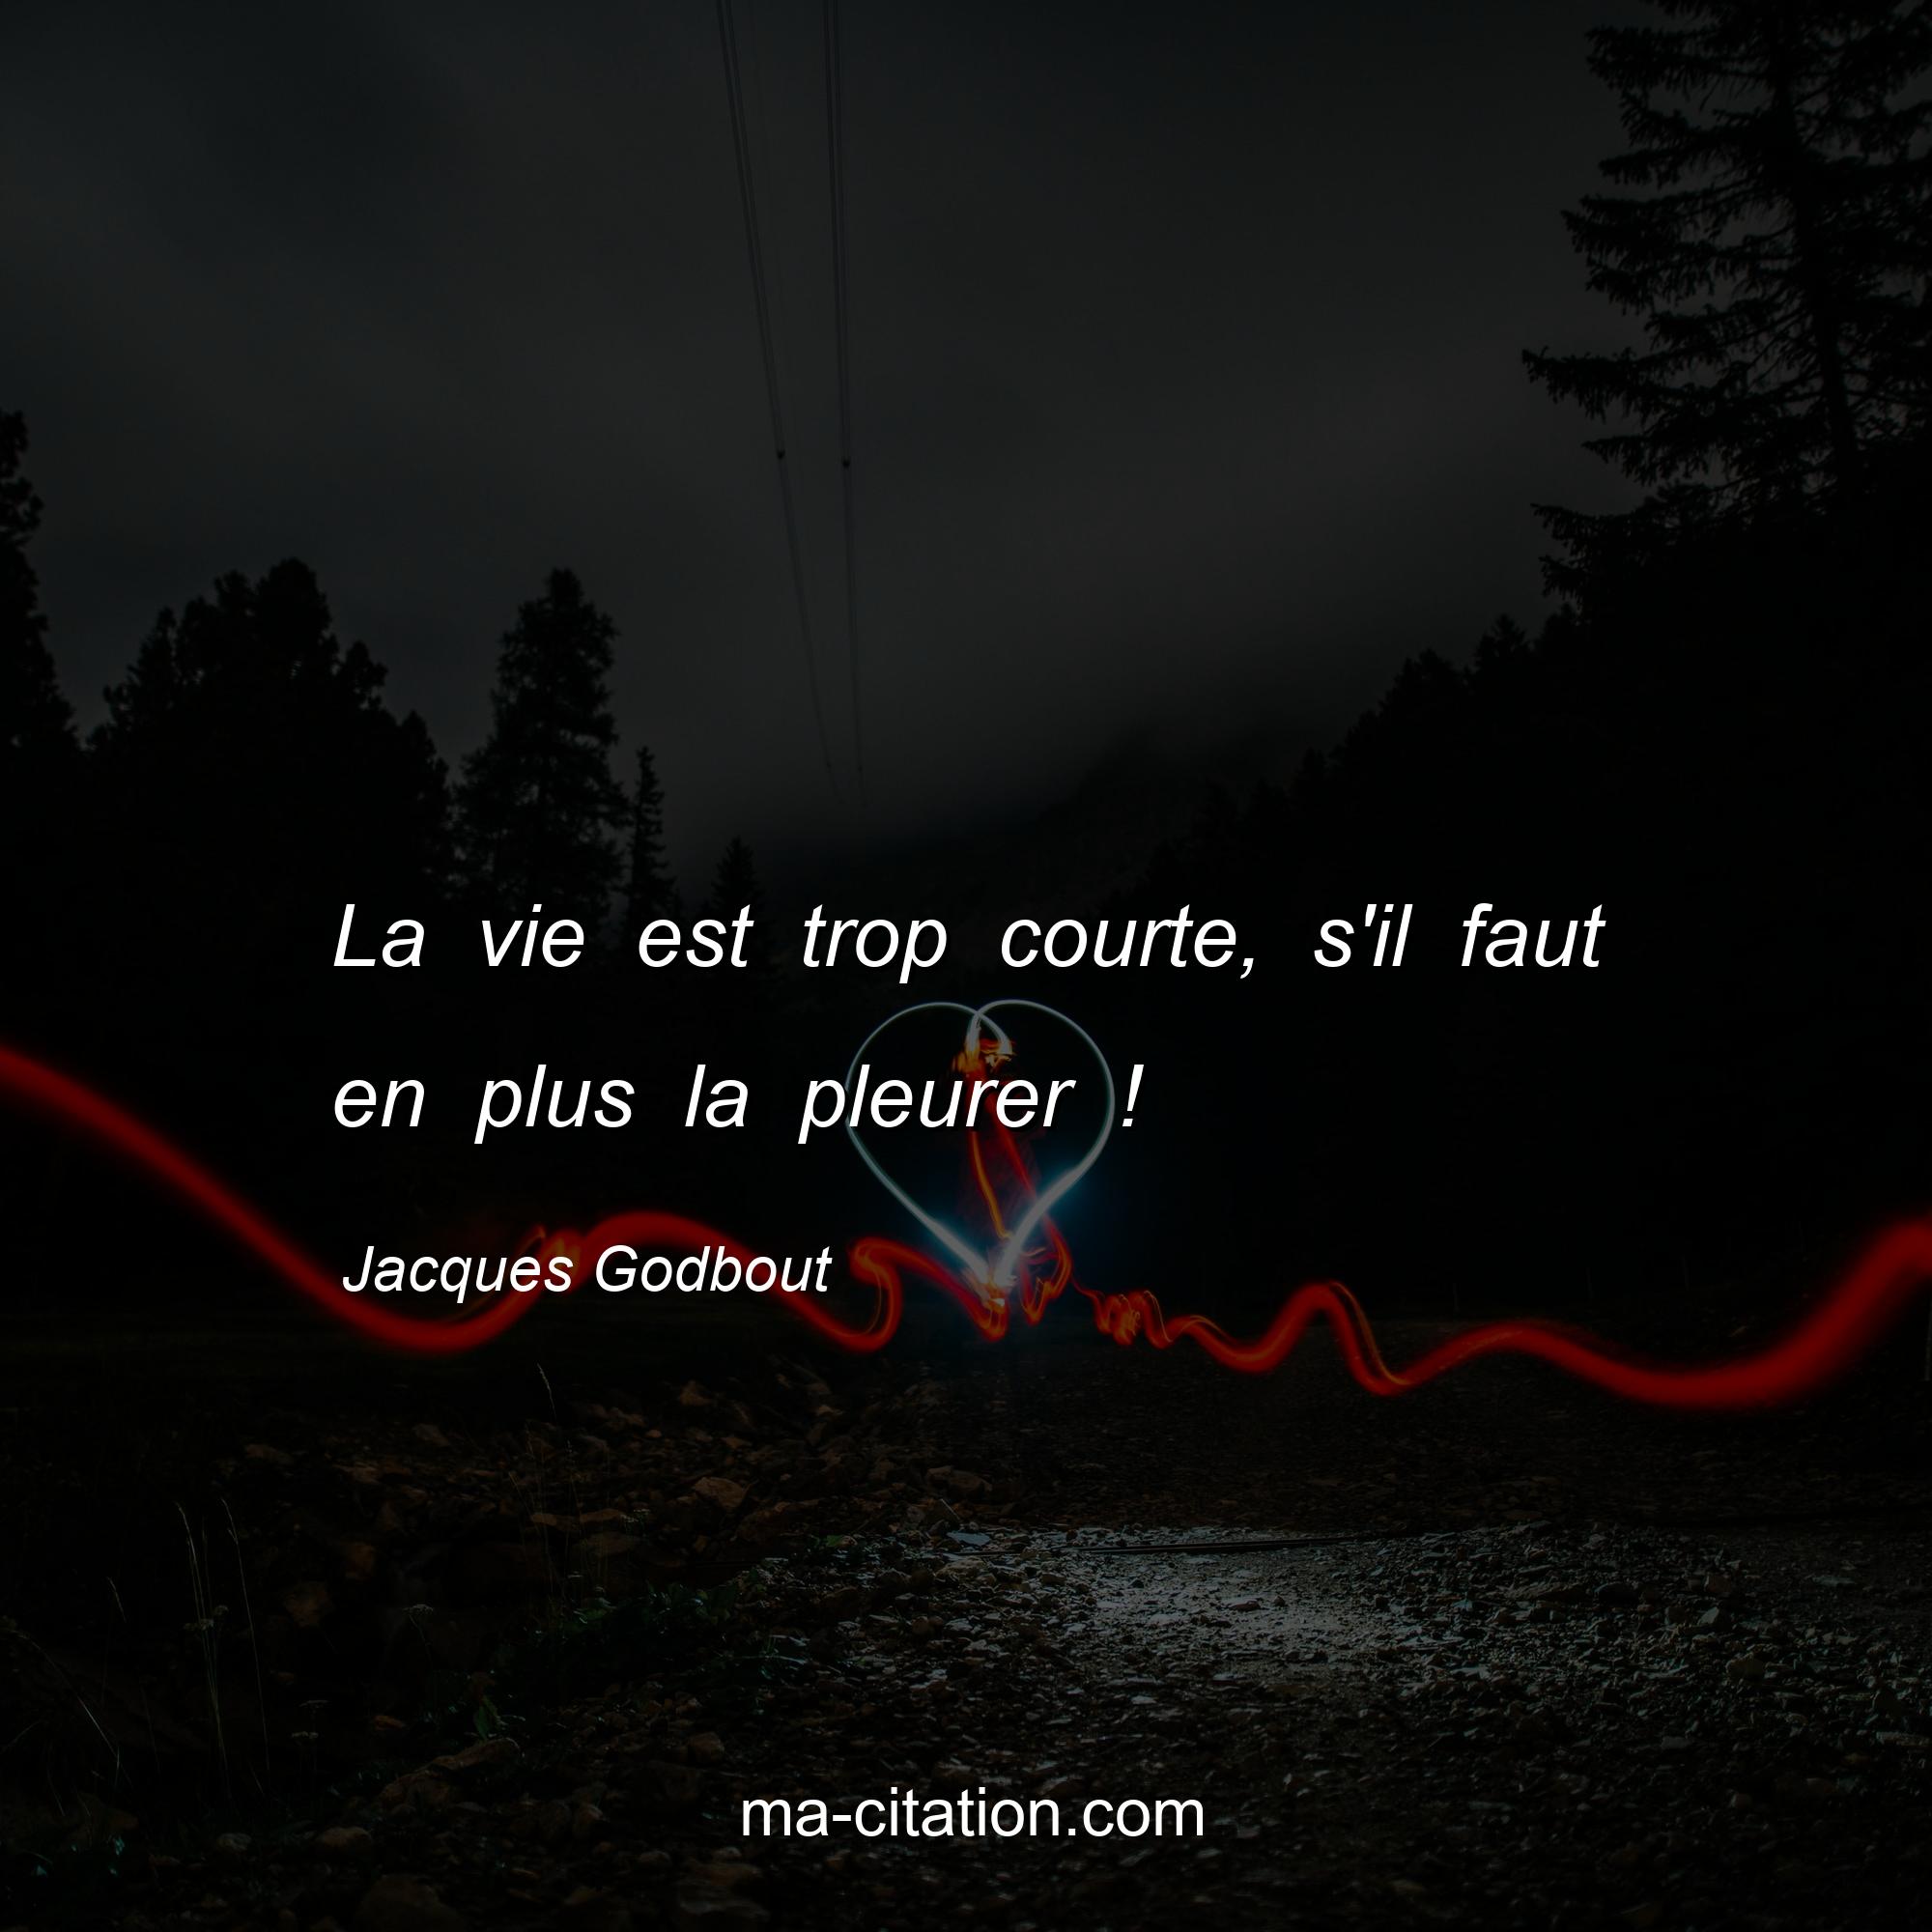 Jacques Godbout : La vie est trop courte, s'il faut en plus la pleurer !